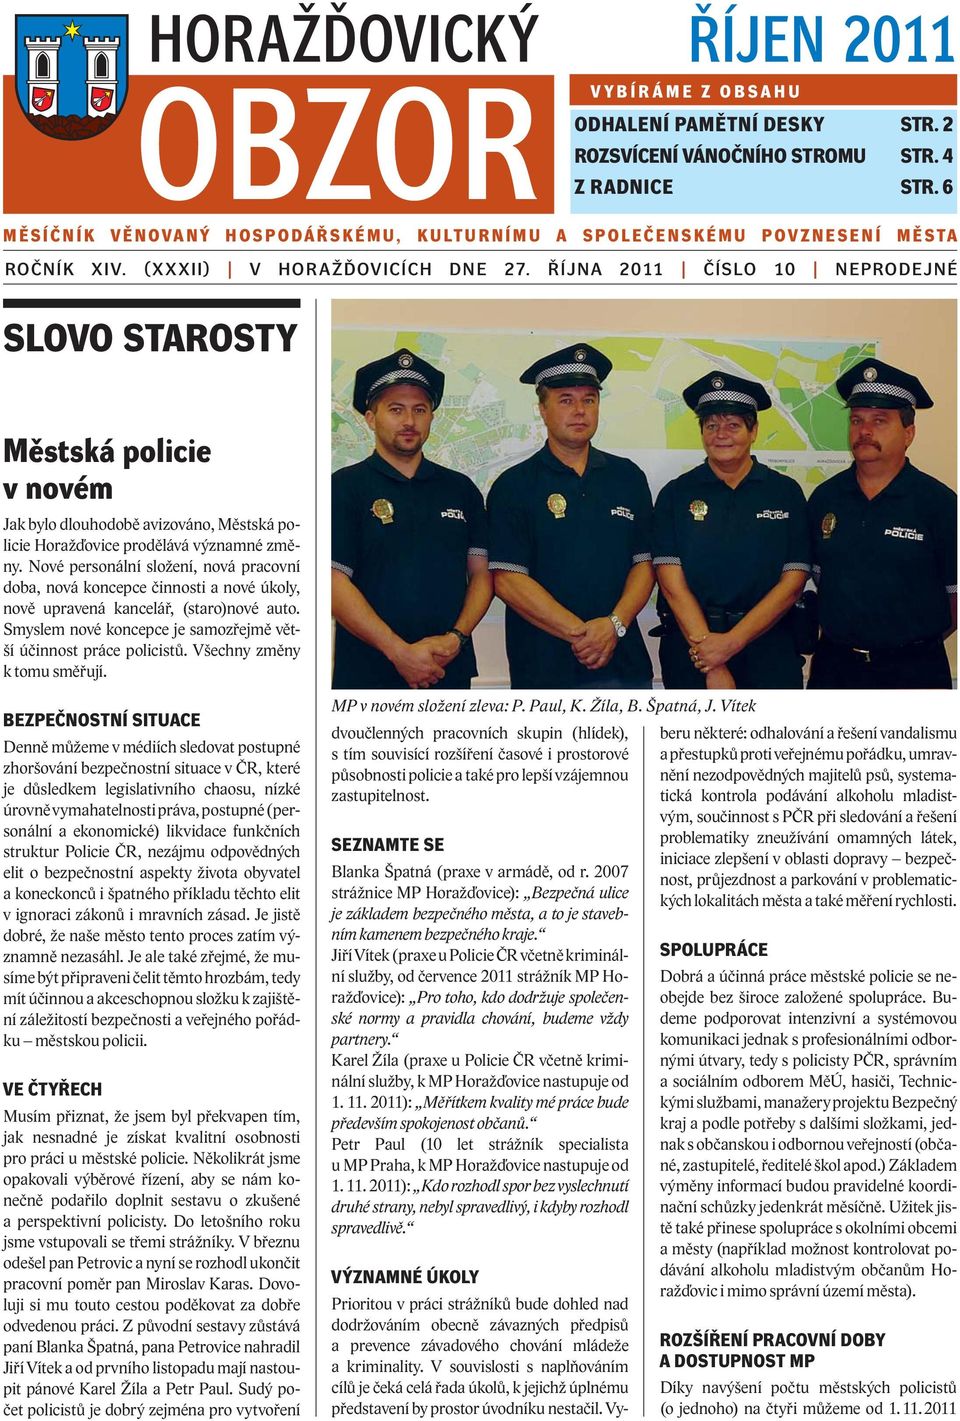 ŘÍJNA 2011 ČÍSLO 10 NEPRODEJNÉ SLOVO STAROSTY Městská policie v novém Jak bylo dlouhodobě avizováno, Městská policie Horažďovice prodělává významné změny.